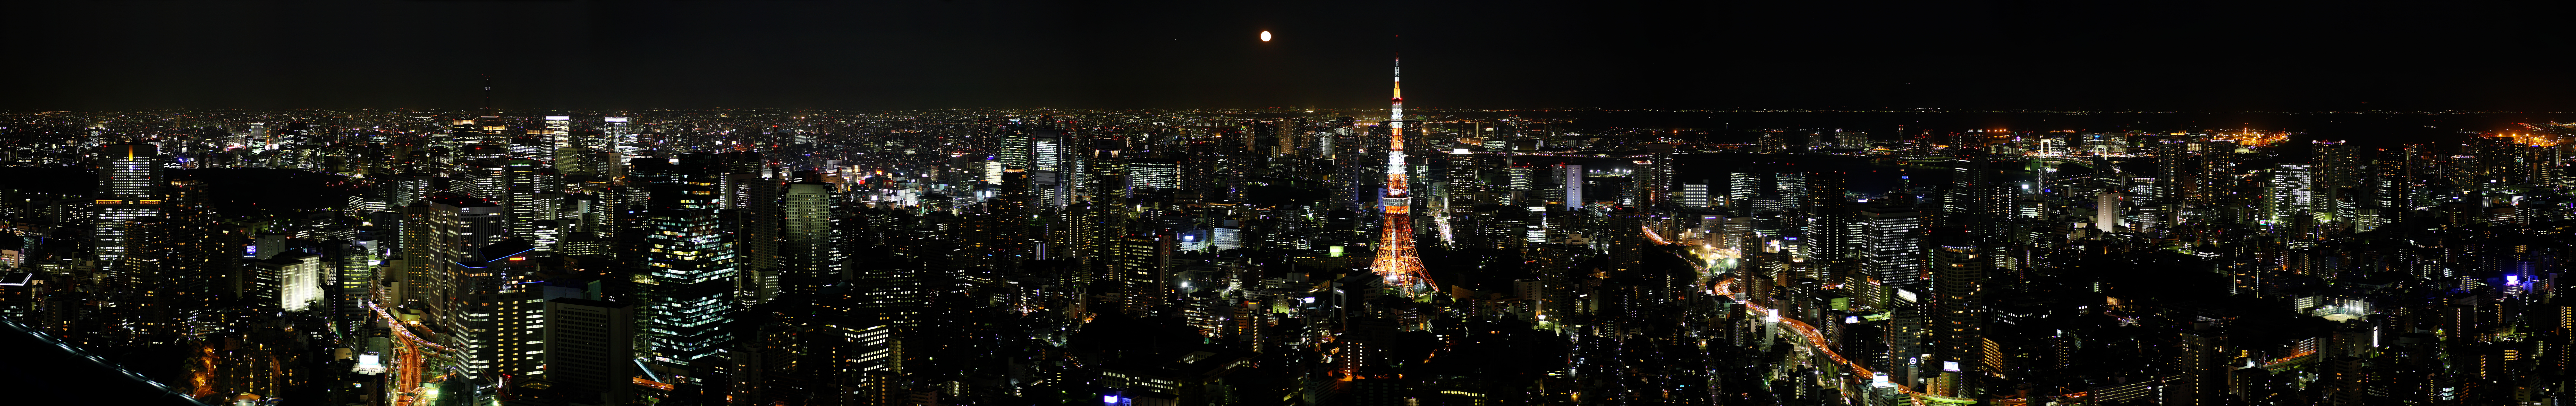 fotografia, materiale, libero il panorama, dipinga, fotografia di scorta,Panorama di Tokio, Torre di Tokio, edificio a molti piani, grande citt, vista di cavaliere